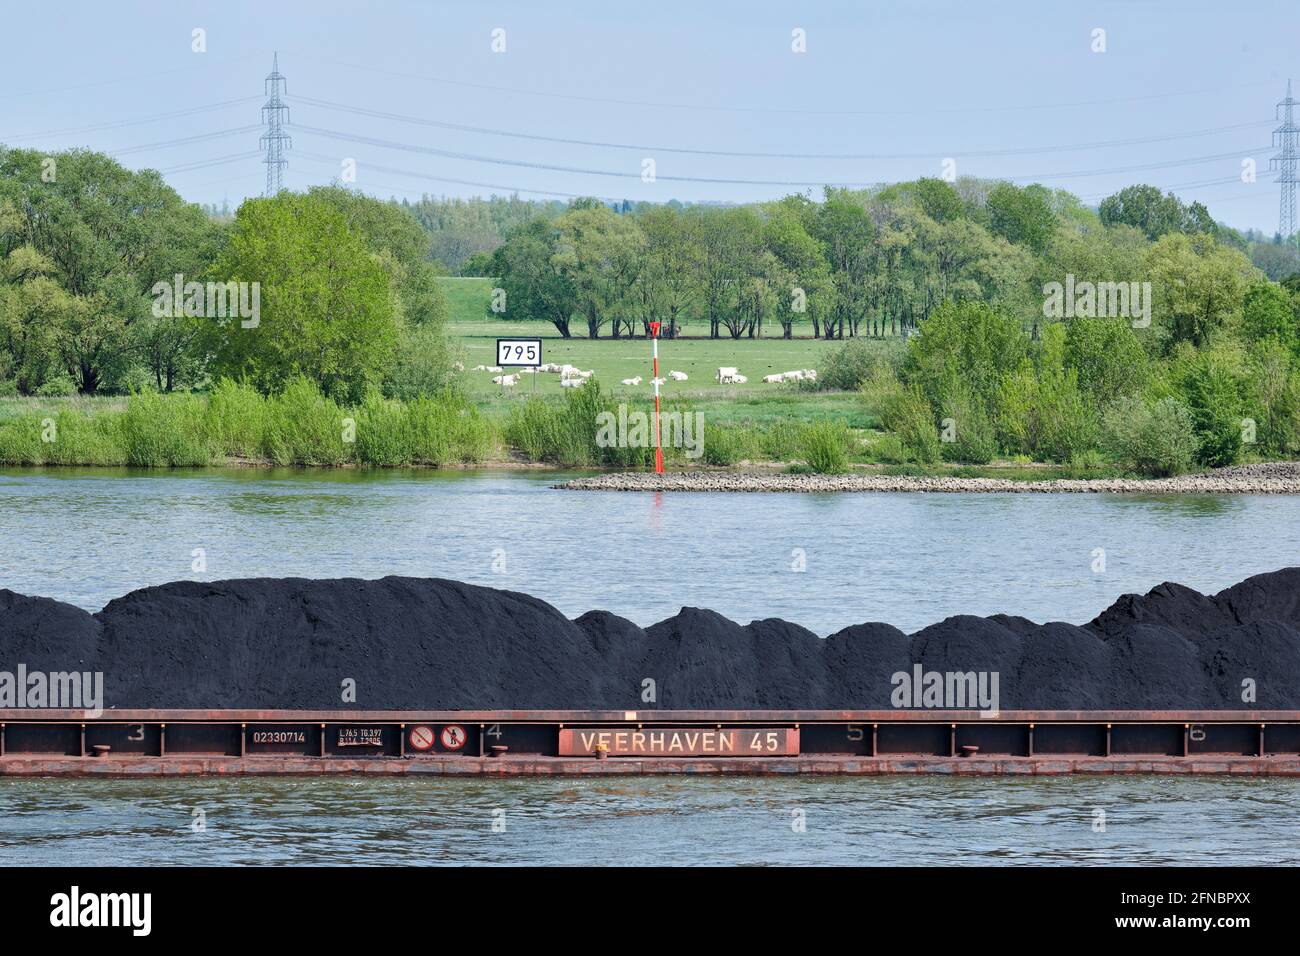 Auf dem Rhein wird Kohle auf Binnenschiffe geladen und Richtung Süden verschifft. Foto Stock